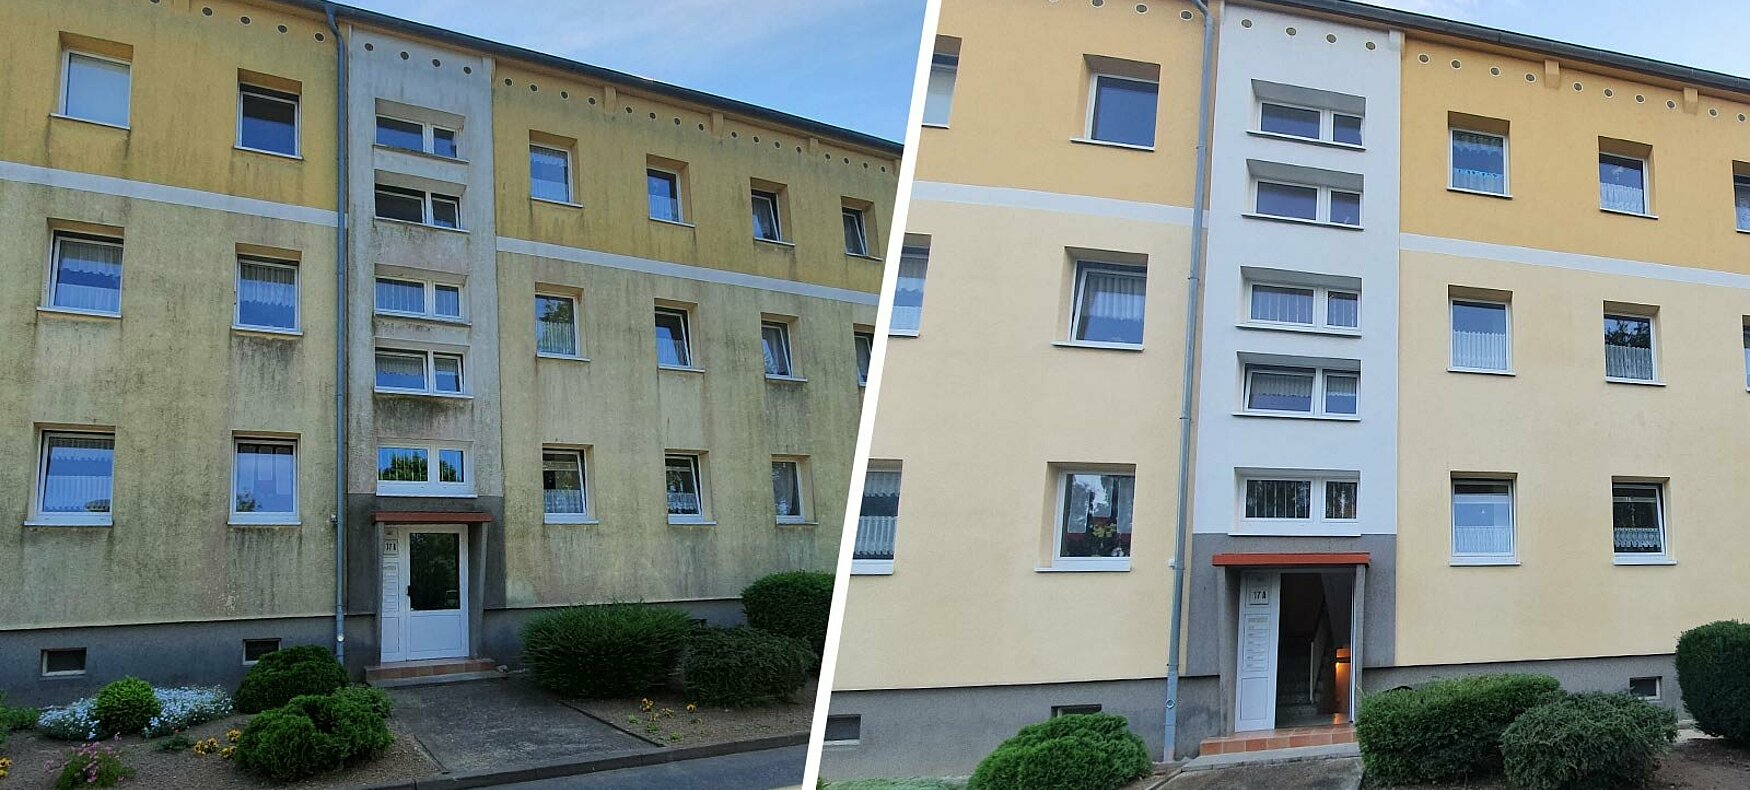 Fassadenreinigung Schwerin: Jetzt Angebot einholen und Hauswand reinigen lassen.